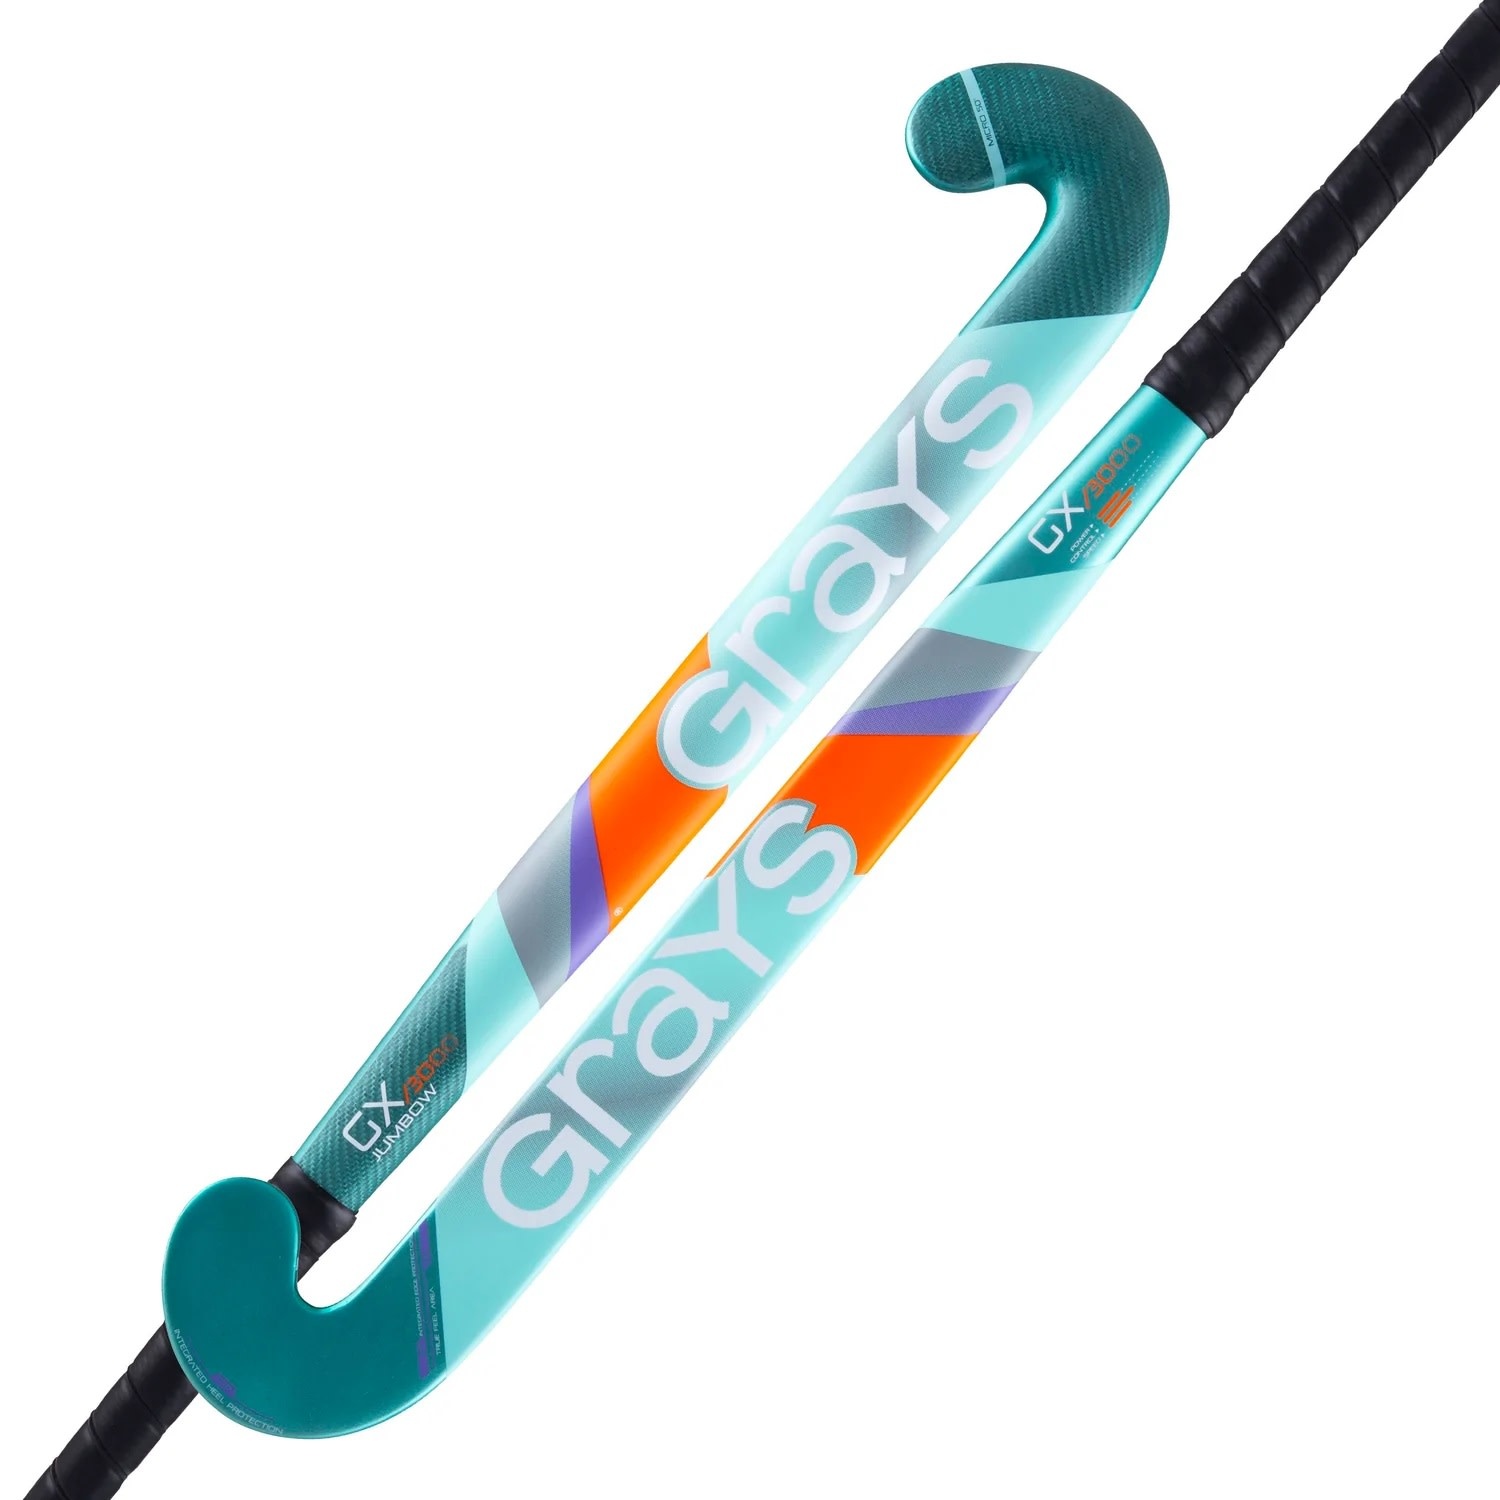 Postbode Ontslag Immuniseren Grays GX 3000 Ultrabow Hockeystick 36,5 Inch Ice - Green - Tennis Store NL